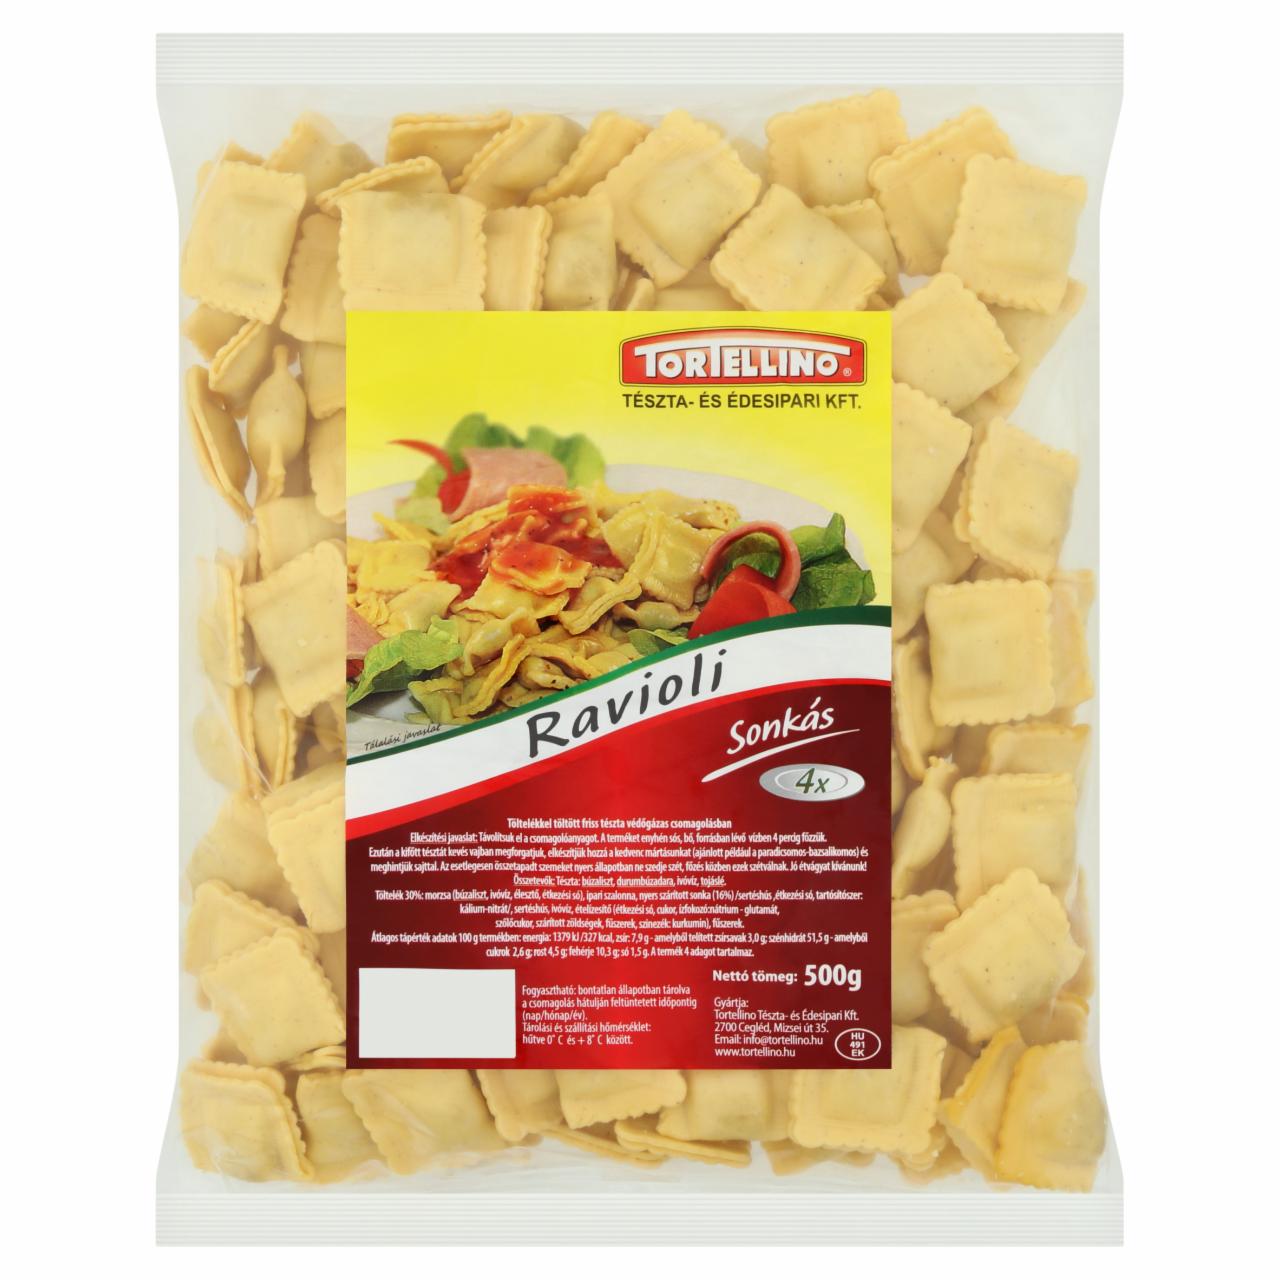 Képek - Tortellino ravioli sonkás friss tészta 500 g